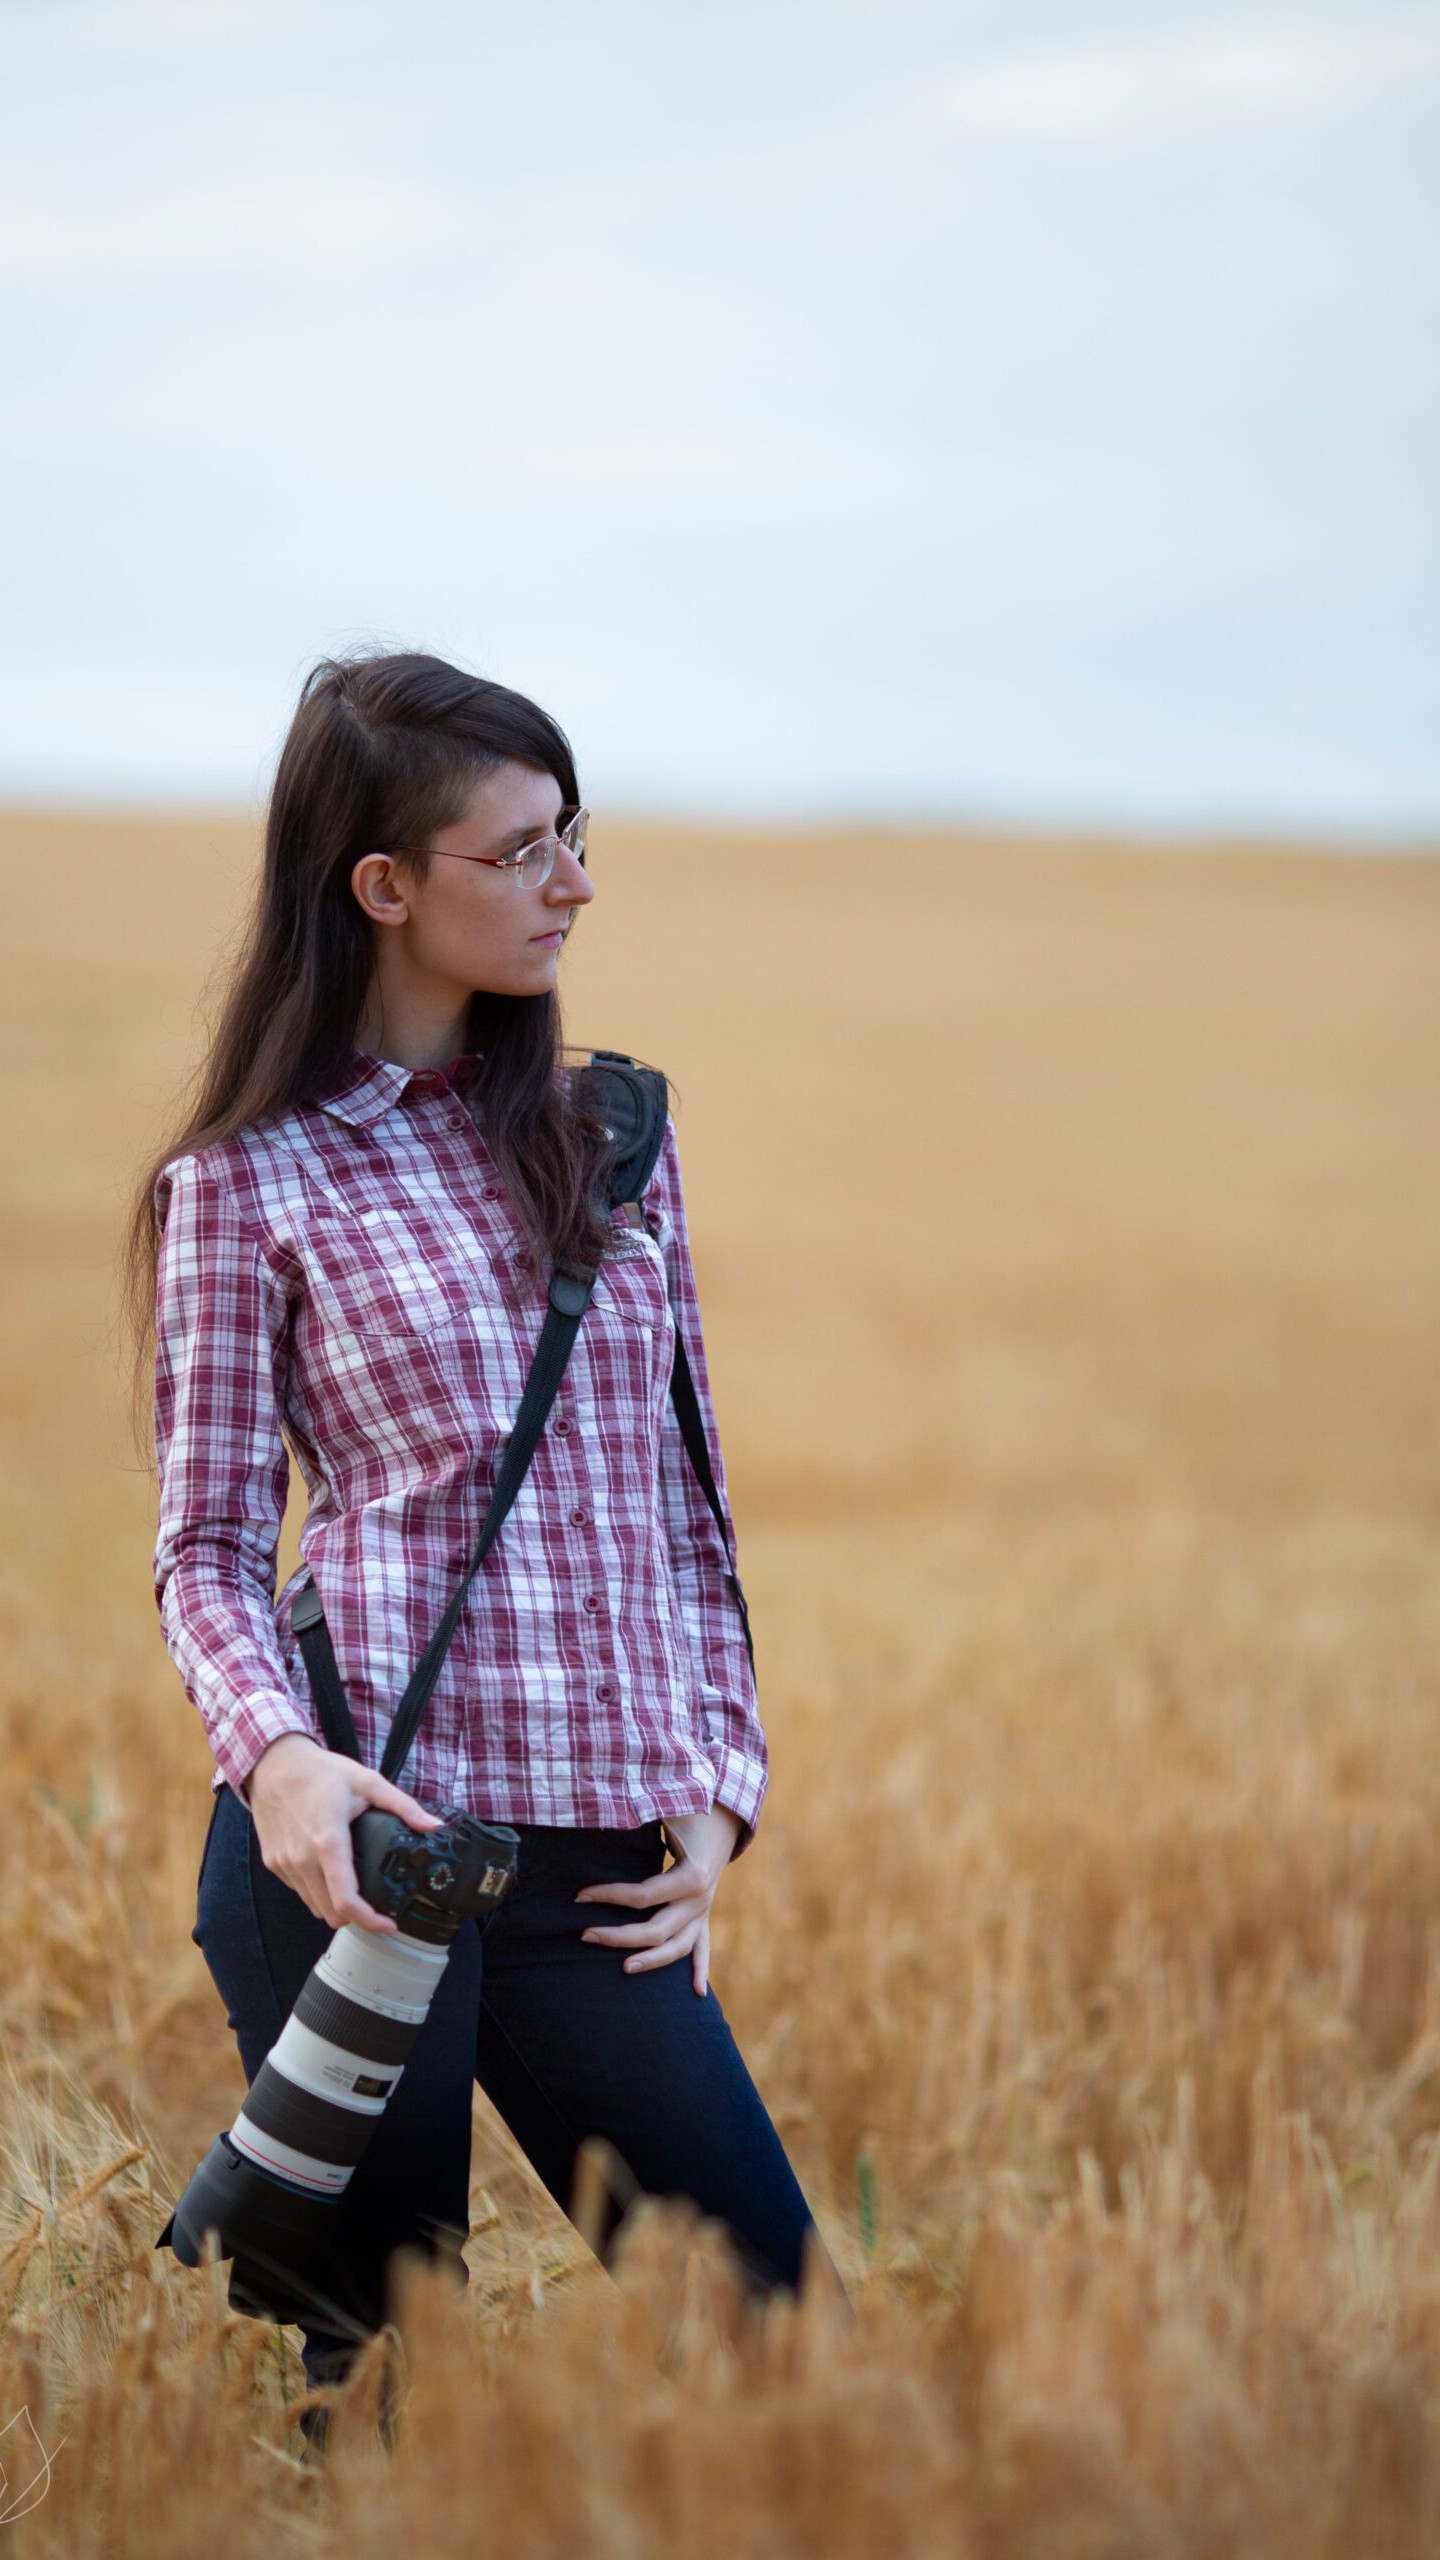 Fotografin mit rotem Karohemd und Kamera an der Seite steht in einem Getreidefeld